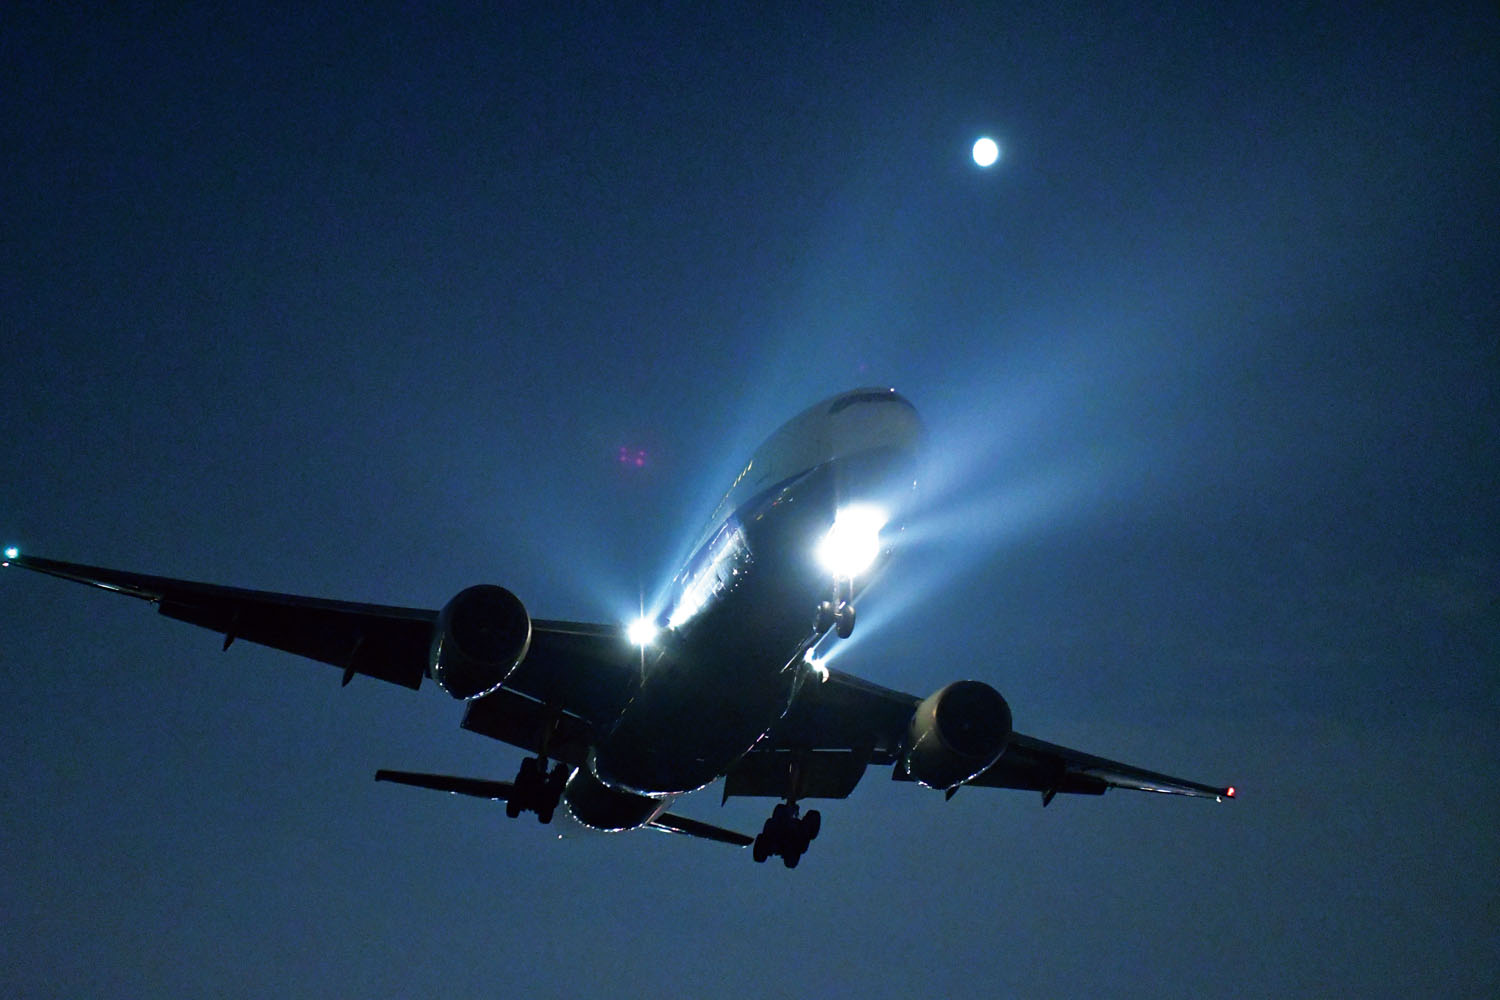 飛行機夜景 は難しくない 撮影時に押さえておくべきいくつかのポイント 飛行機写真の教科書 第7回 Pictures